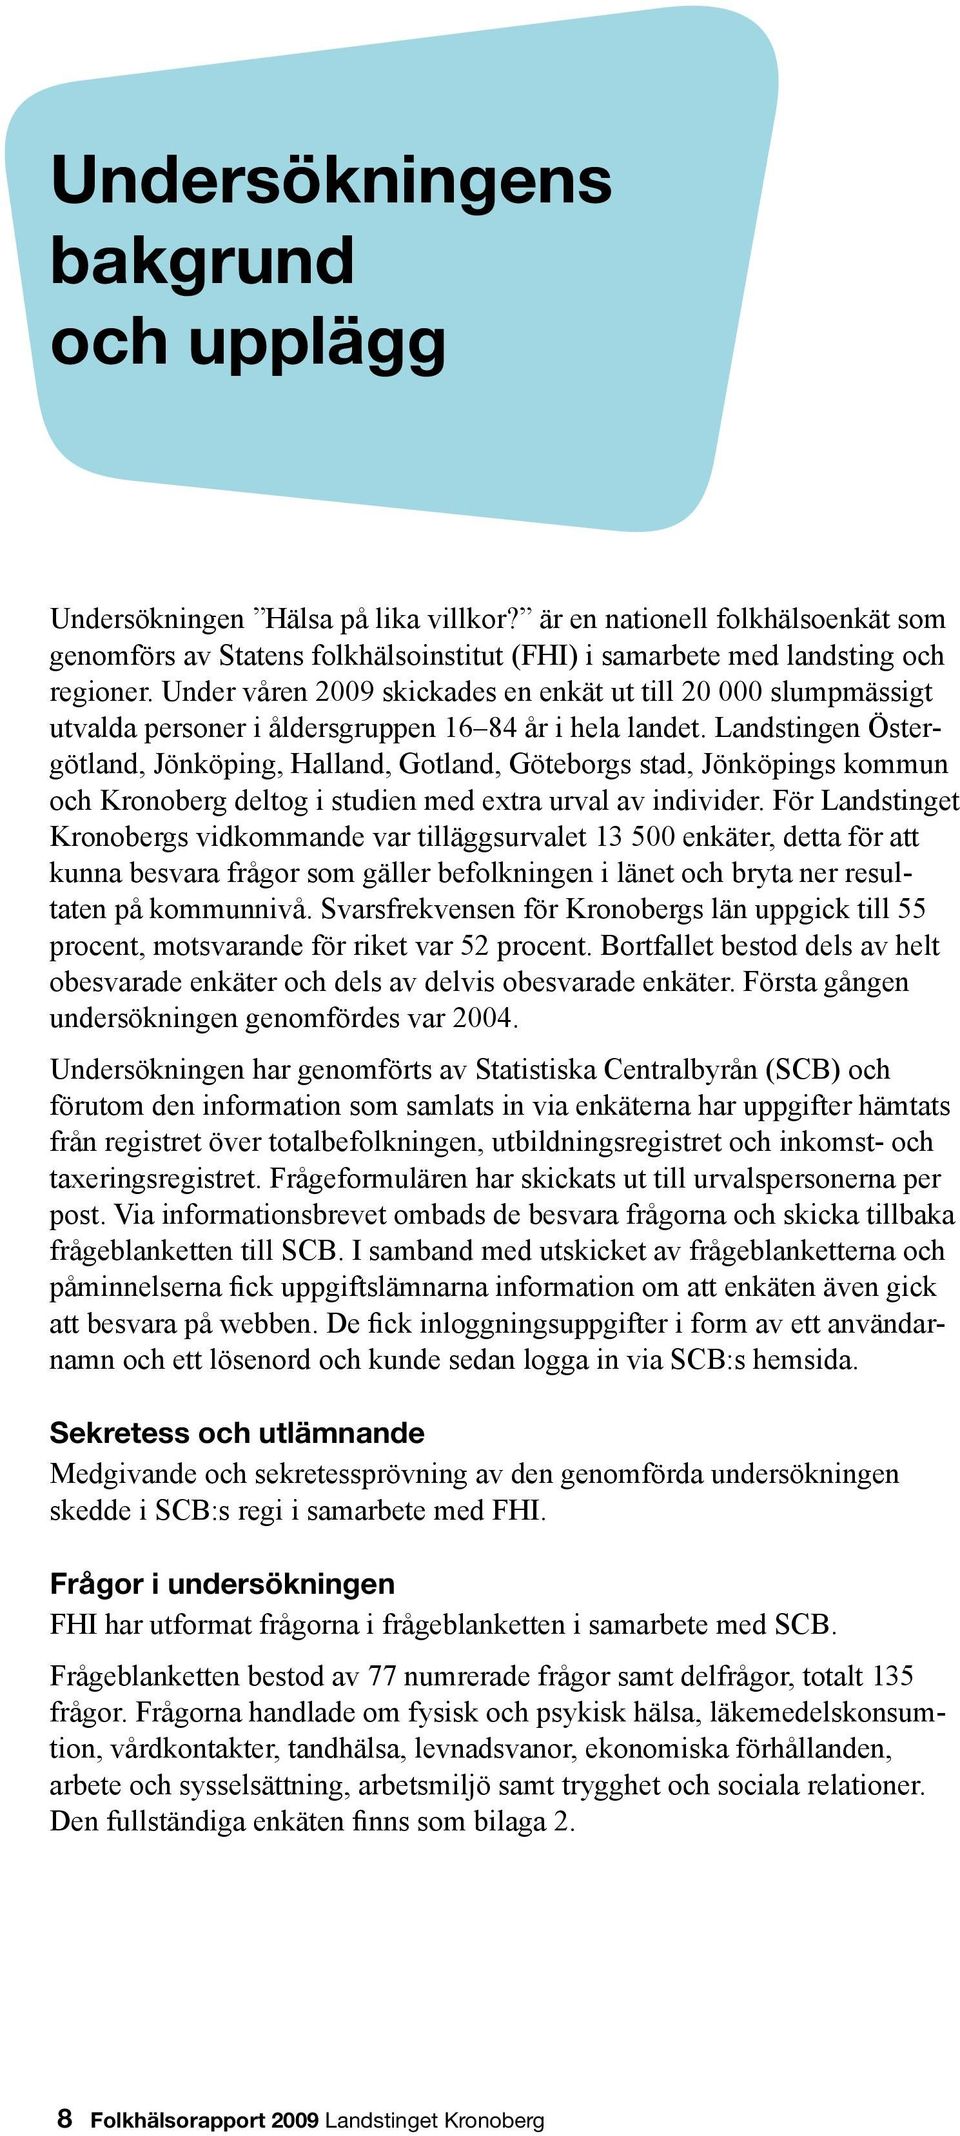 Landstingen Östergötland, Jönköping, Halland, Gotland, Göteborgs stad, Jönköpings kommun och Kronoberg deltog i studien med extra urval av individer.